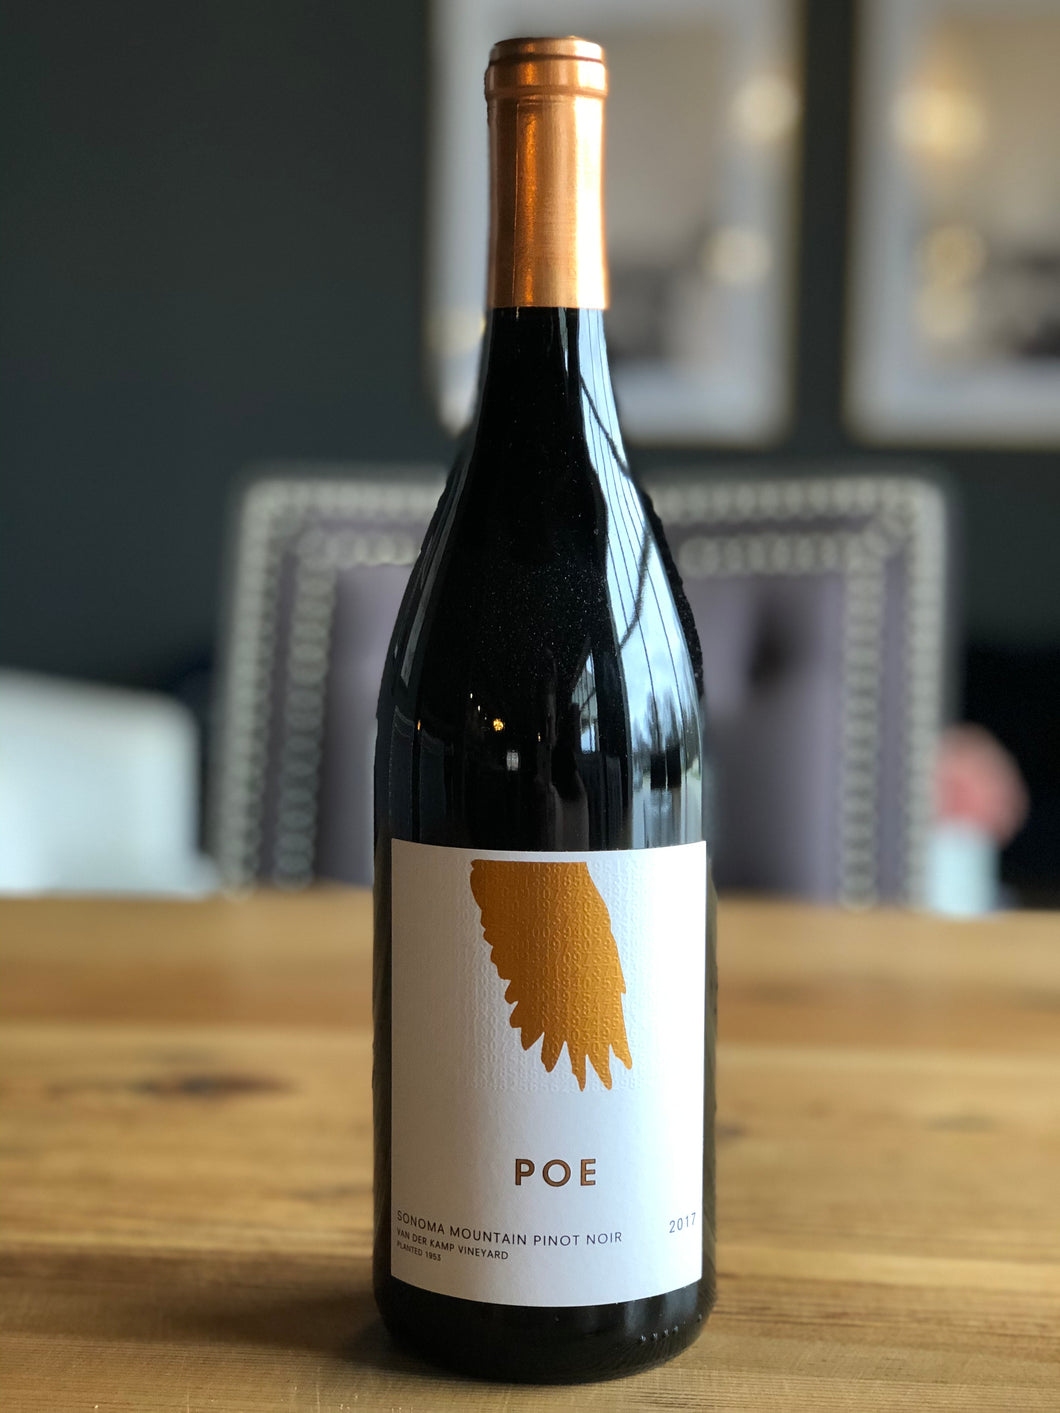 Poe Sonoma Mountain Pinot Noir, 2018